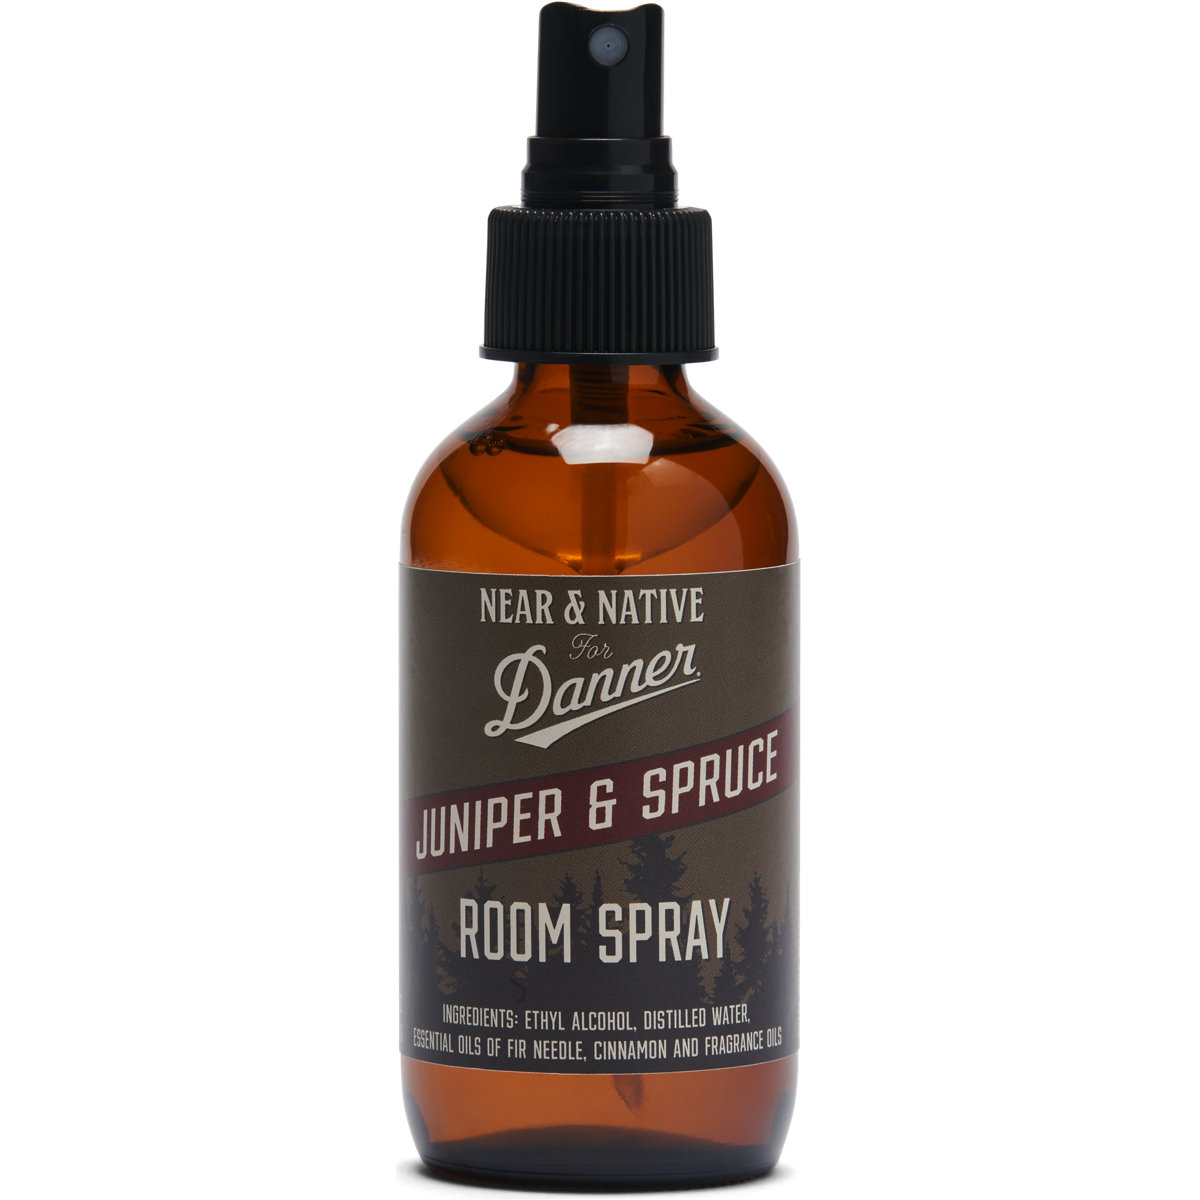 Danner Branded Room Spray - Juniper Spruce